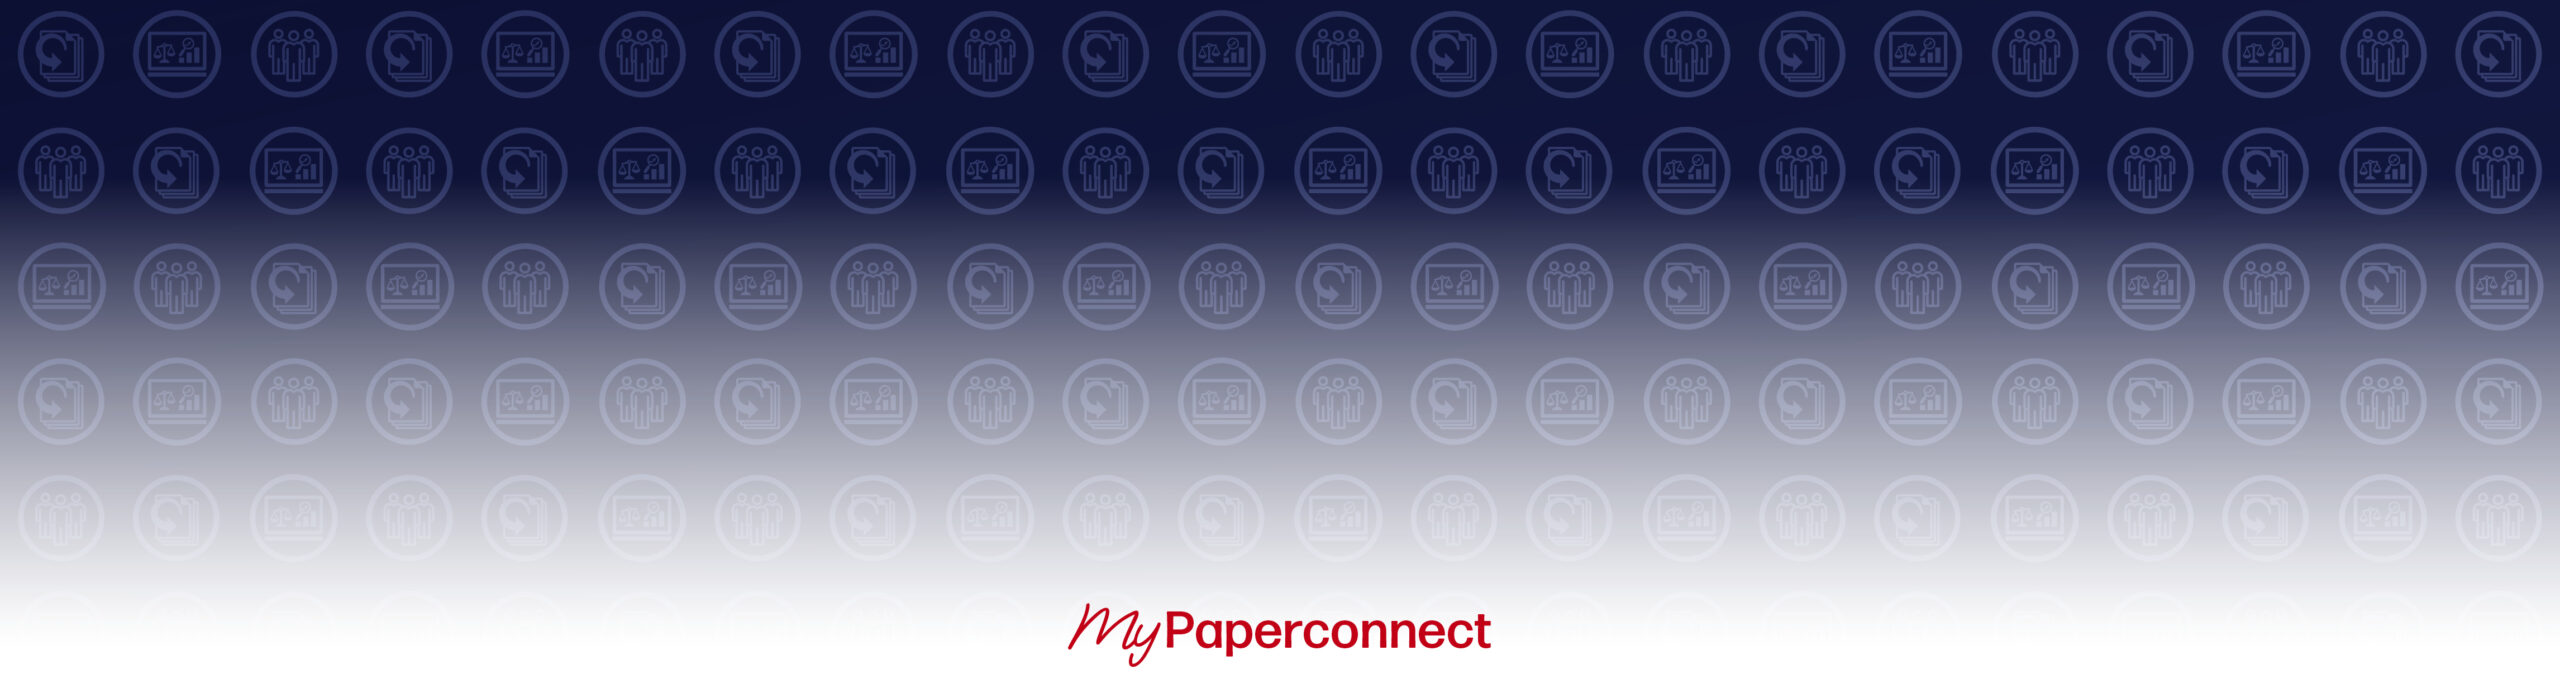 Rotes Logo "my Paperconnect" vor einem blauen Hintergrund, auf welchem die Icons der Paperconnect-Produkte "Einkaufsmanager Papier", "Einkaufsallianz" und "Altpapiermanager" abgebildet sind.